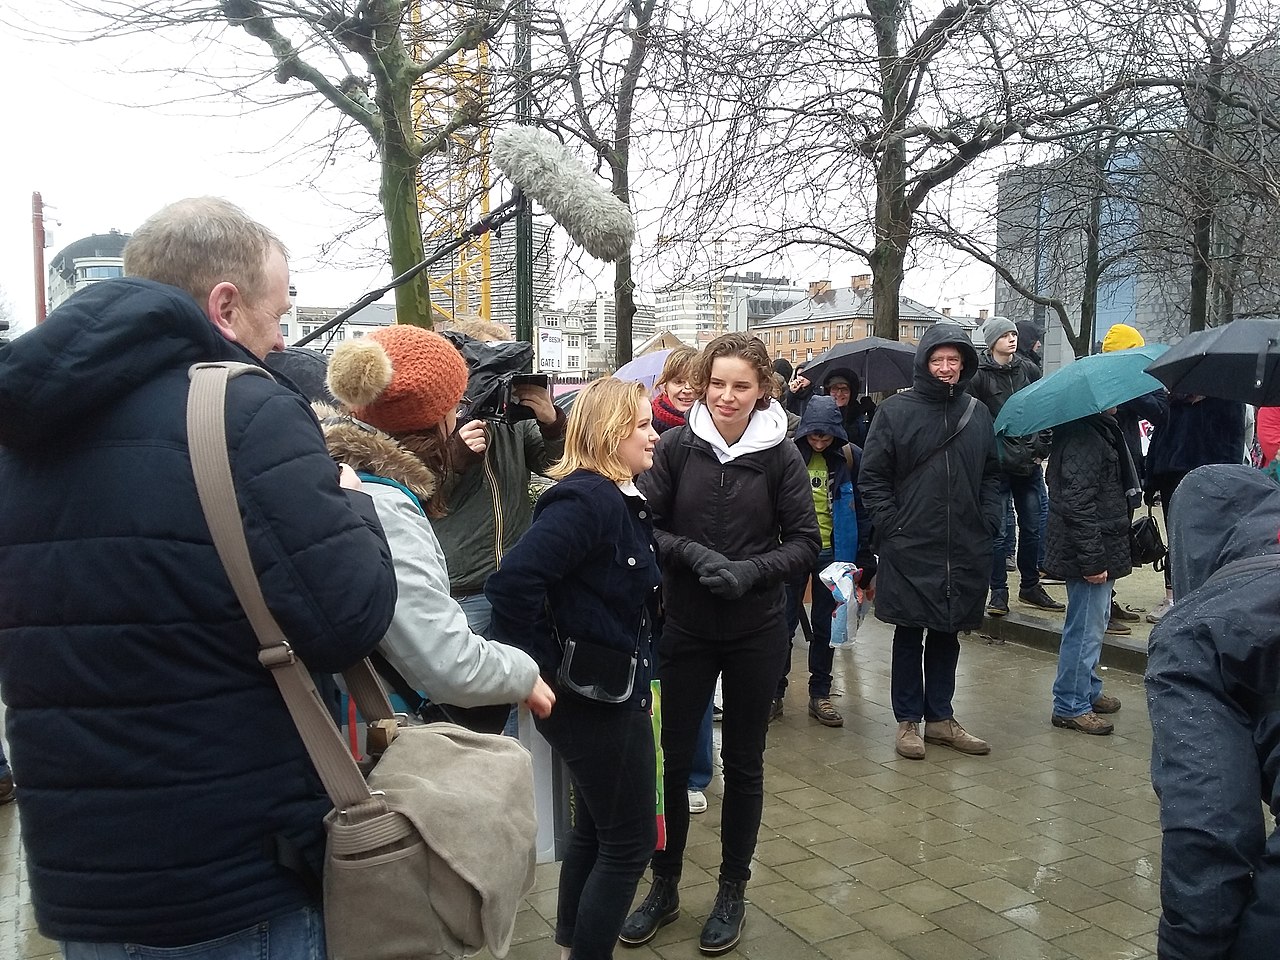 Klimaatactiviste Anuna De Wever (Youth for Climate) tijdens de eerste klimaatmars op zondag 27 januari 2019 in Brussel (foto: Wikipedia).